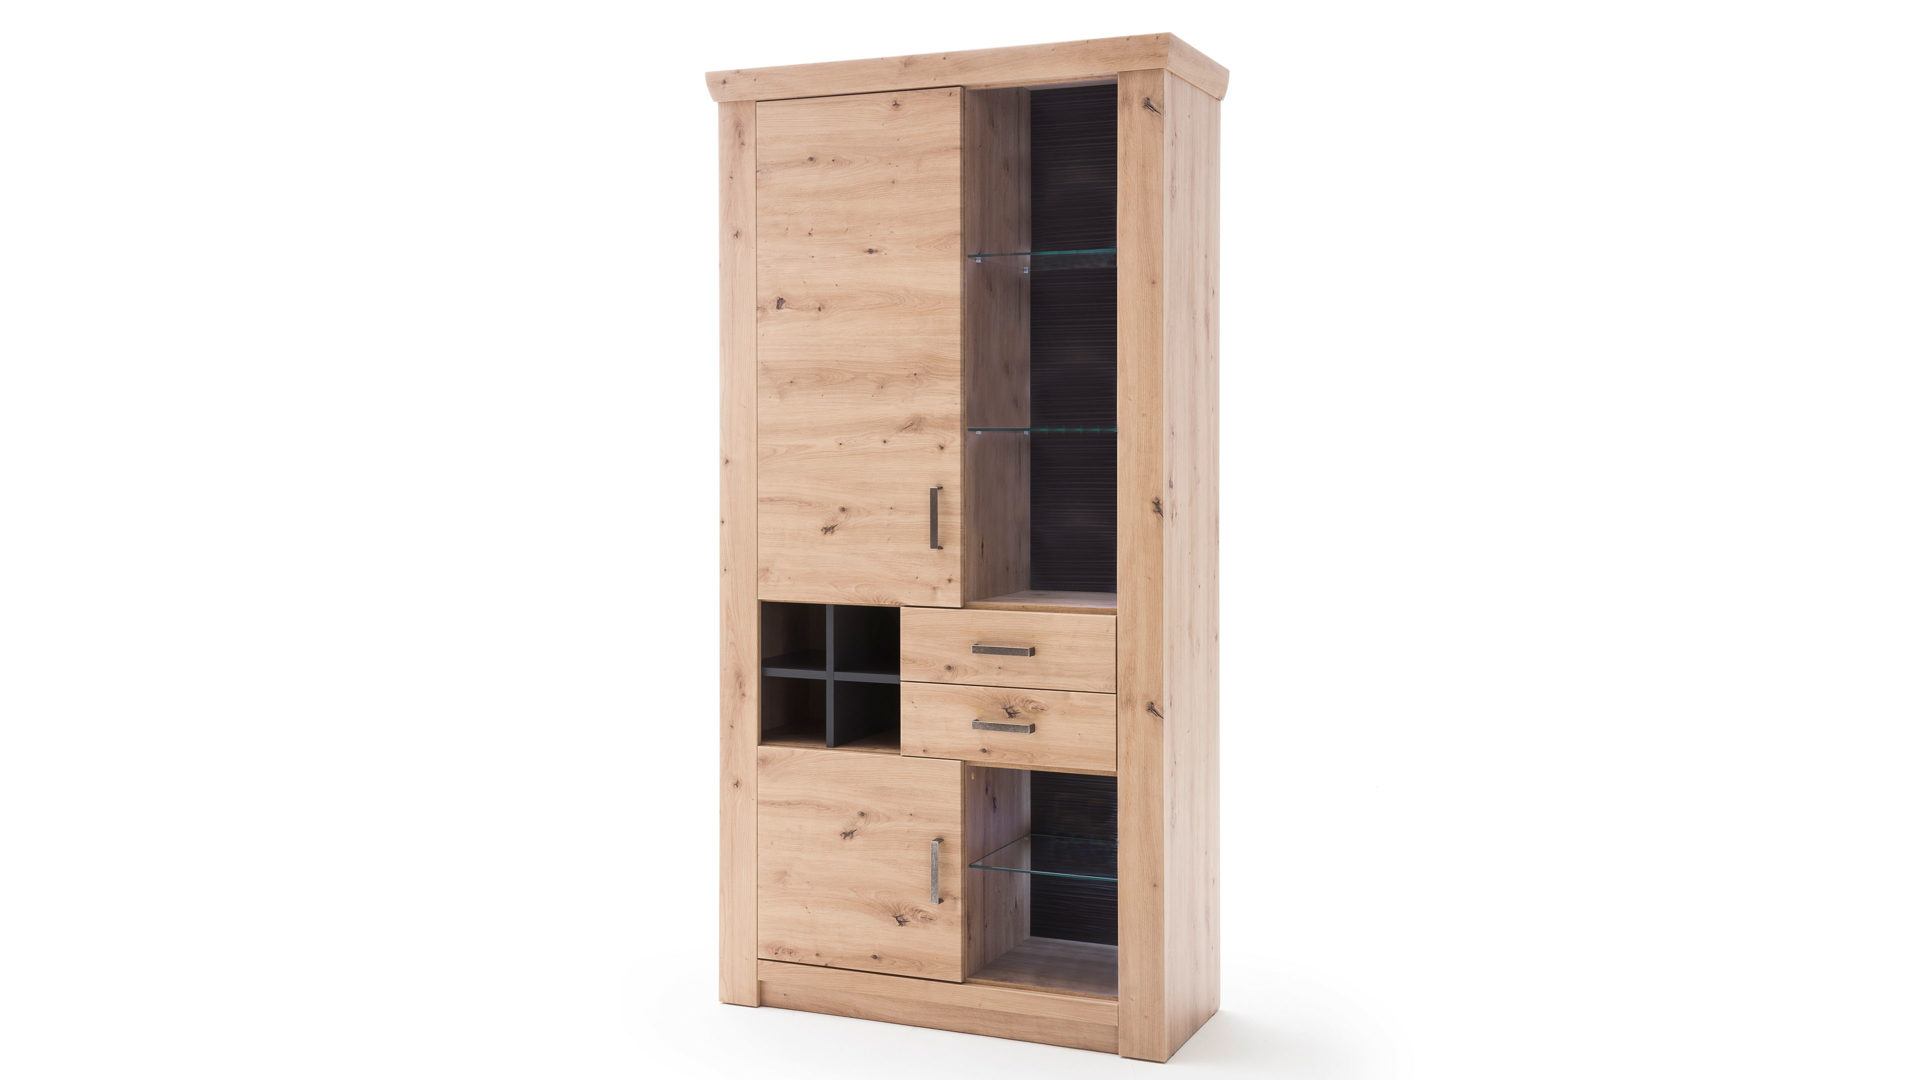 Vitrine Mca furniture aus Holz in Holzfarben Vitrine balkeneiche- & anthrazitfarbene Kunststoffoberflächen – zwei Türen, zwei Schubladen